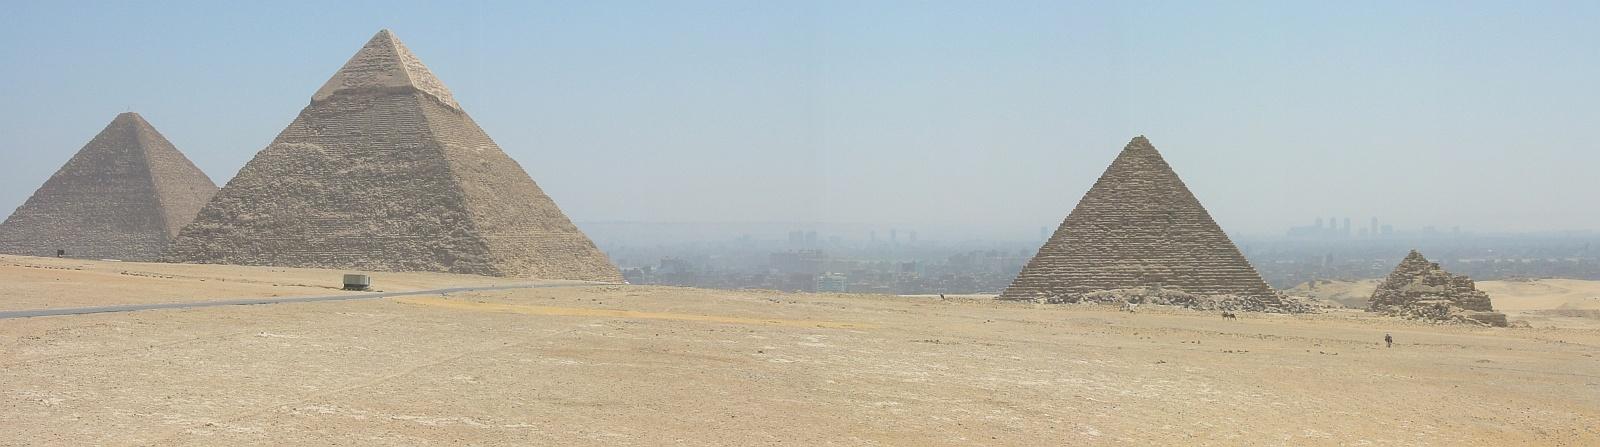 Egypt, Gizeh Pyramids